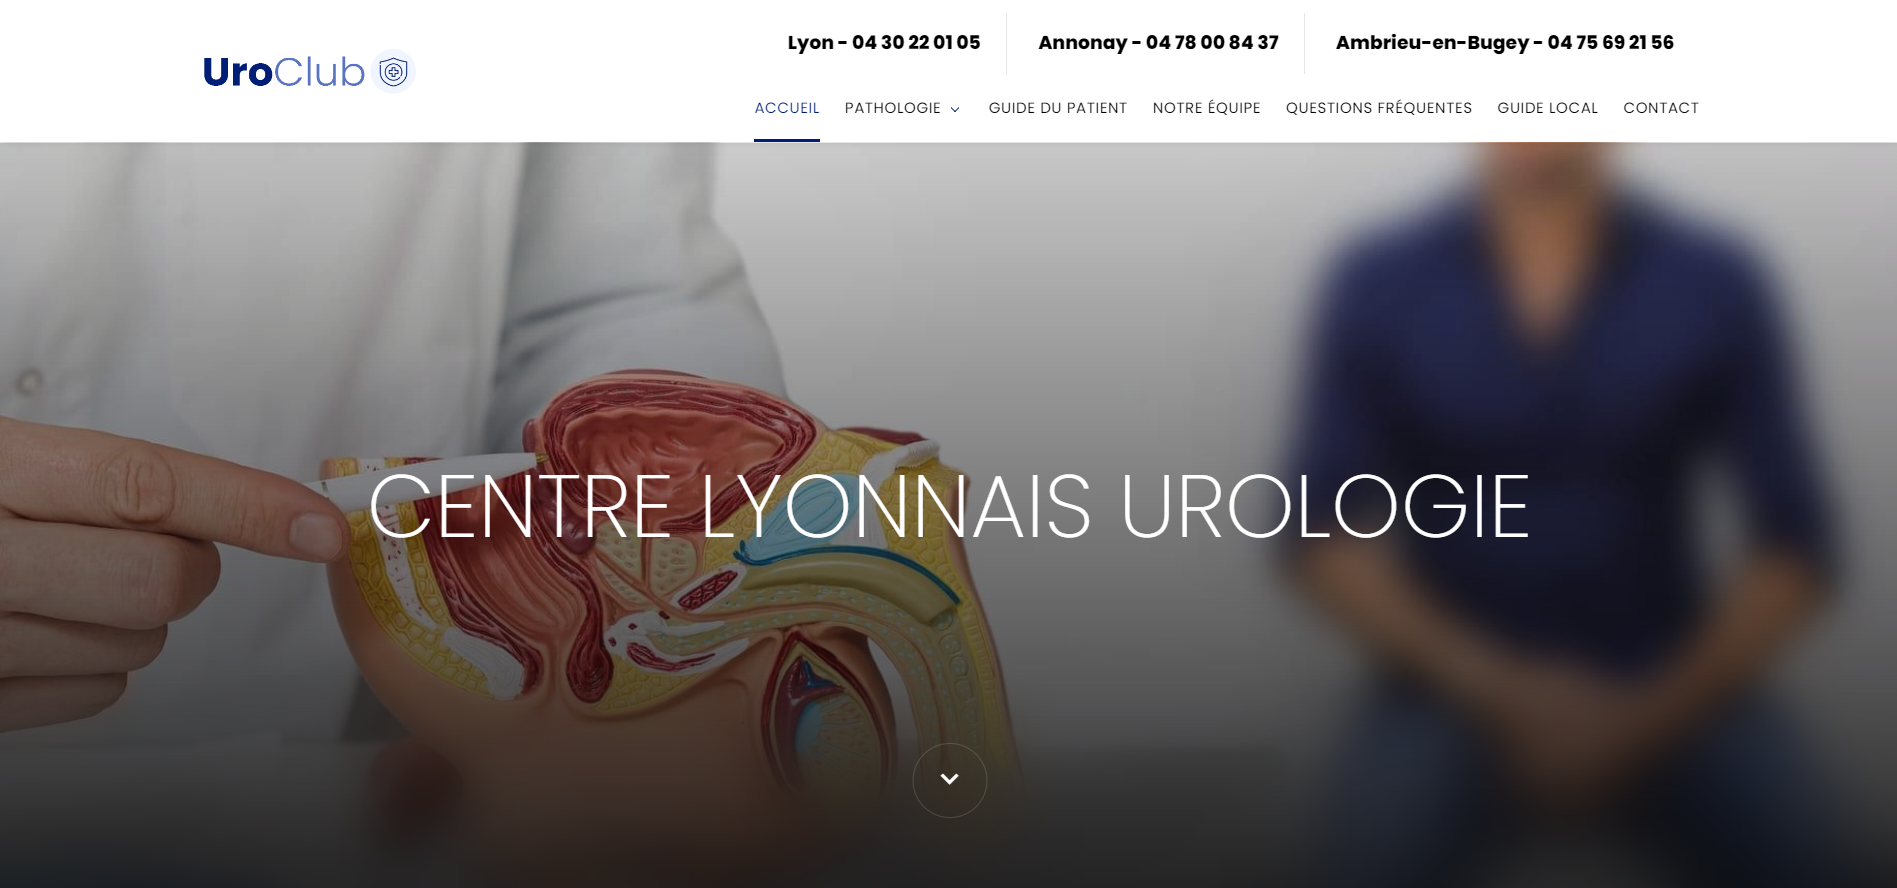 meilleur urologue Lyon